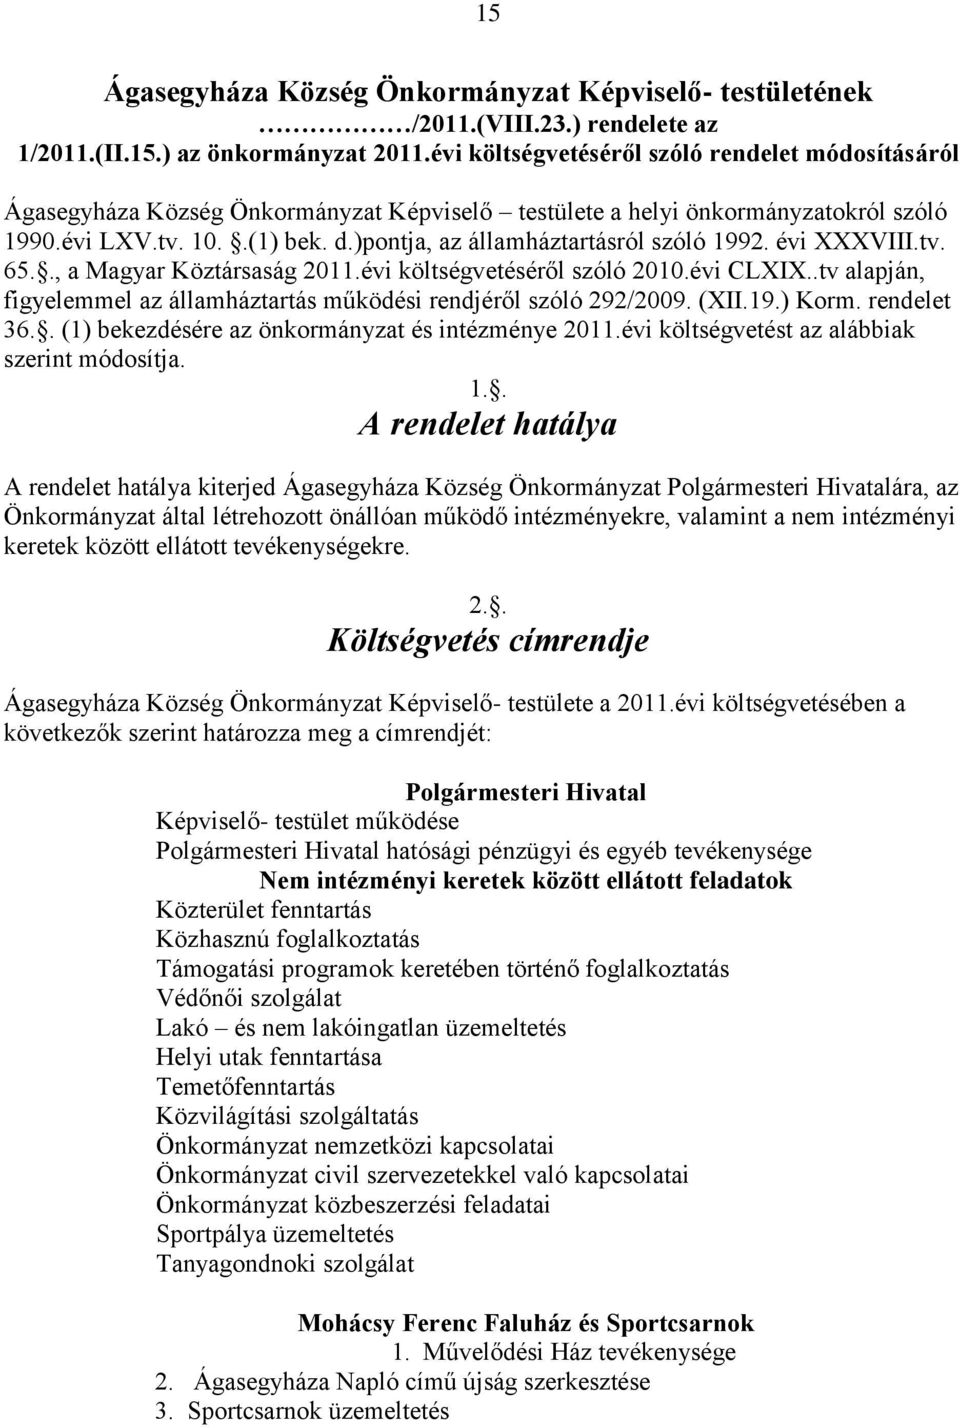 )pontja, az államháztartásról szóló 1992. évi XXXVIII.tv. 65.., a Magyar Köztársaság 2011.évi költségvetéséről szóló 2010.évi CLXIX.